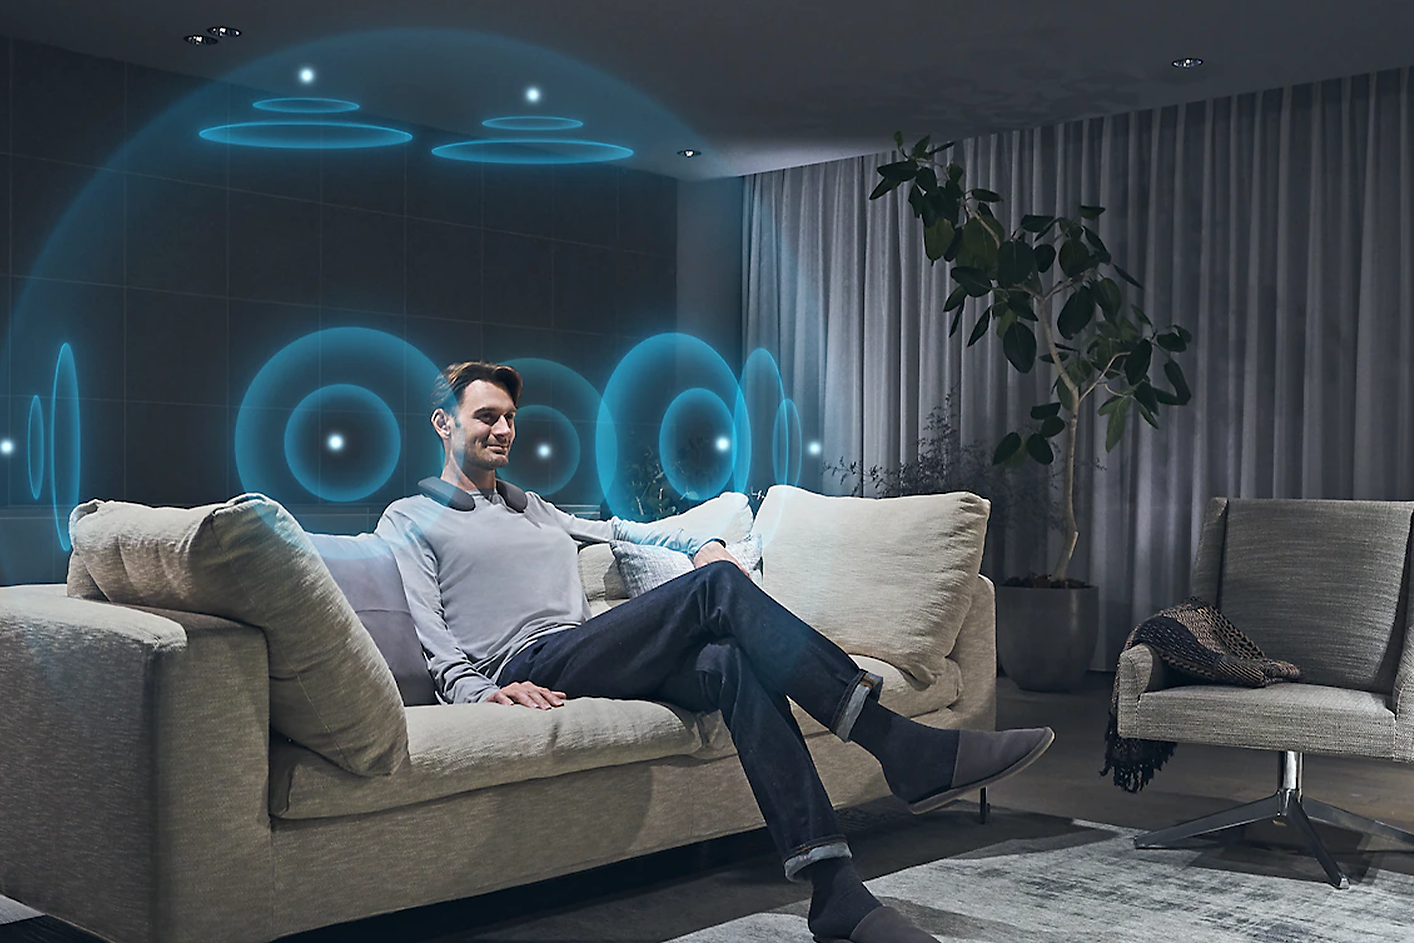 Imagen de un hombre en un salón mirando un televisor BRAVIA con sonido espacial 360